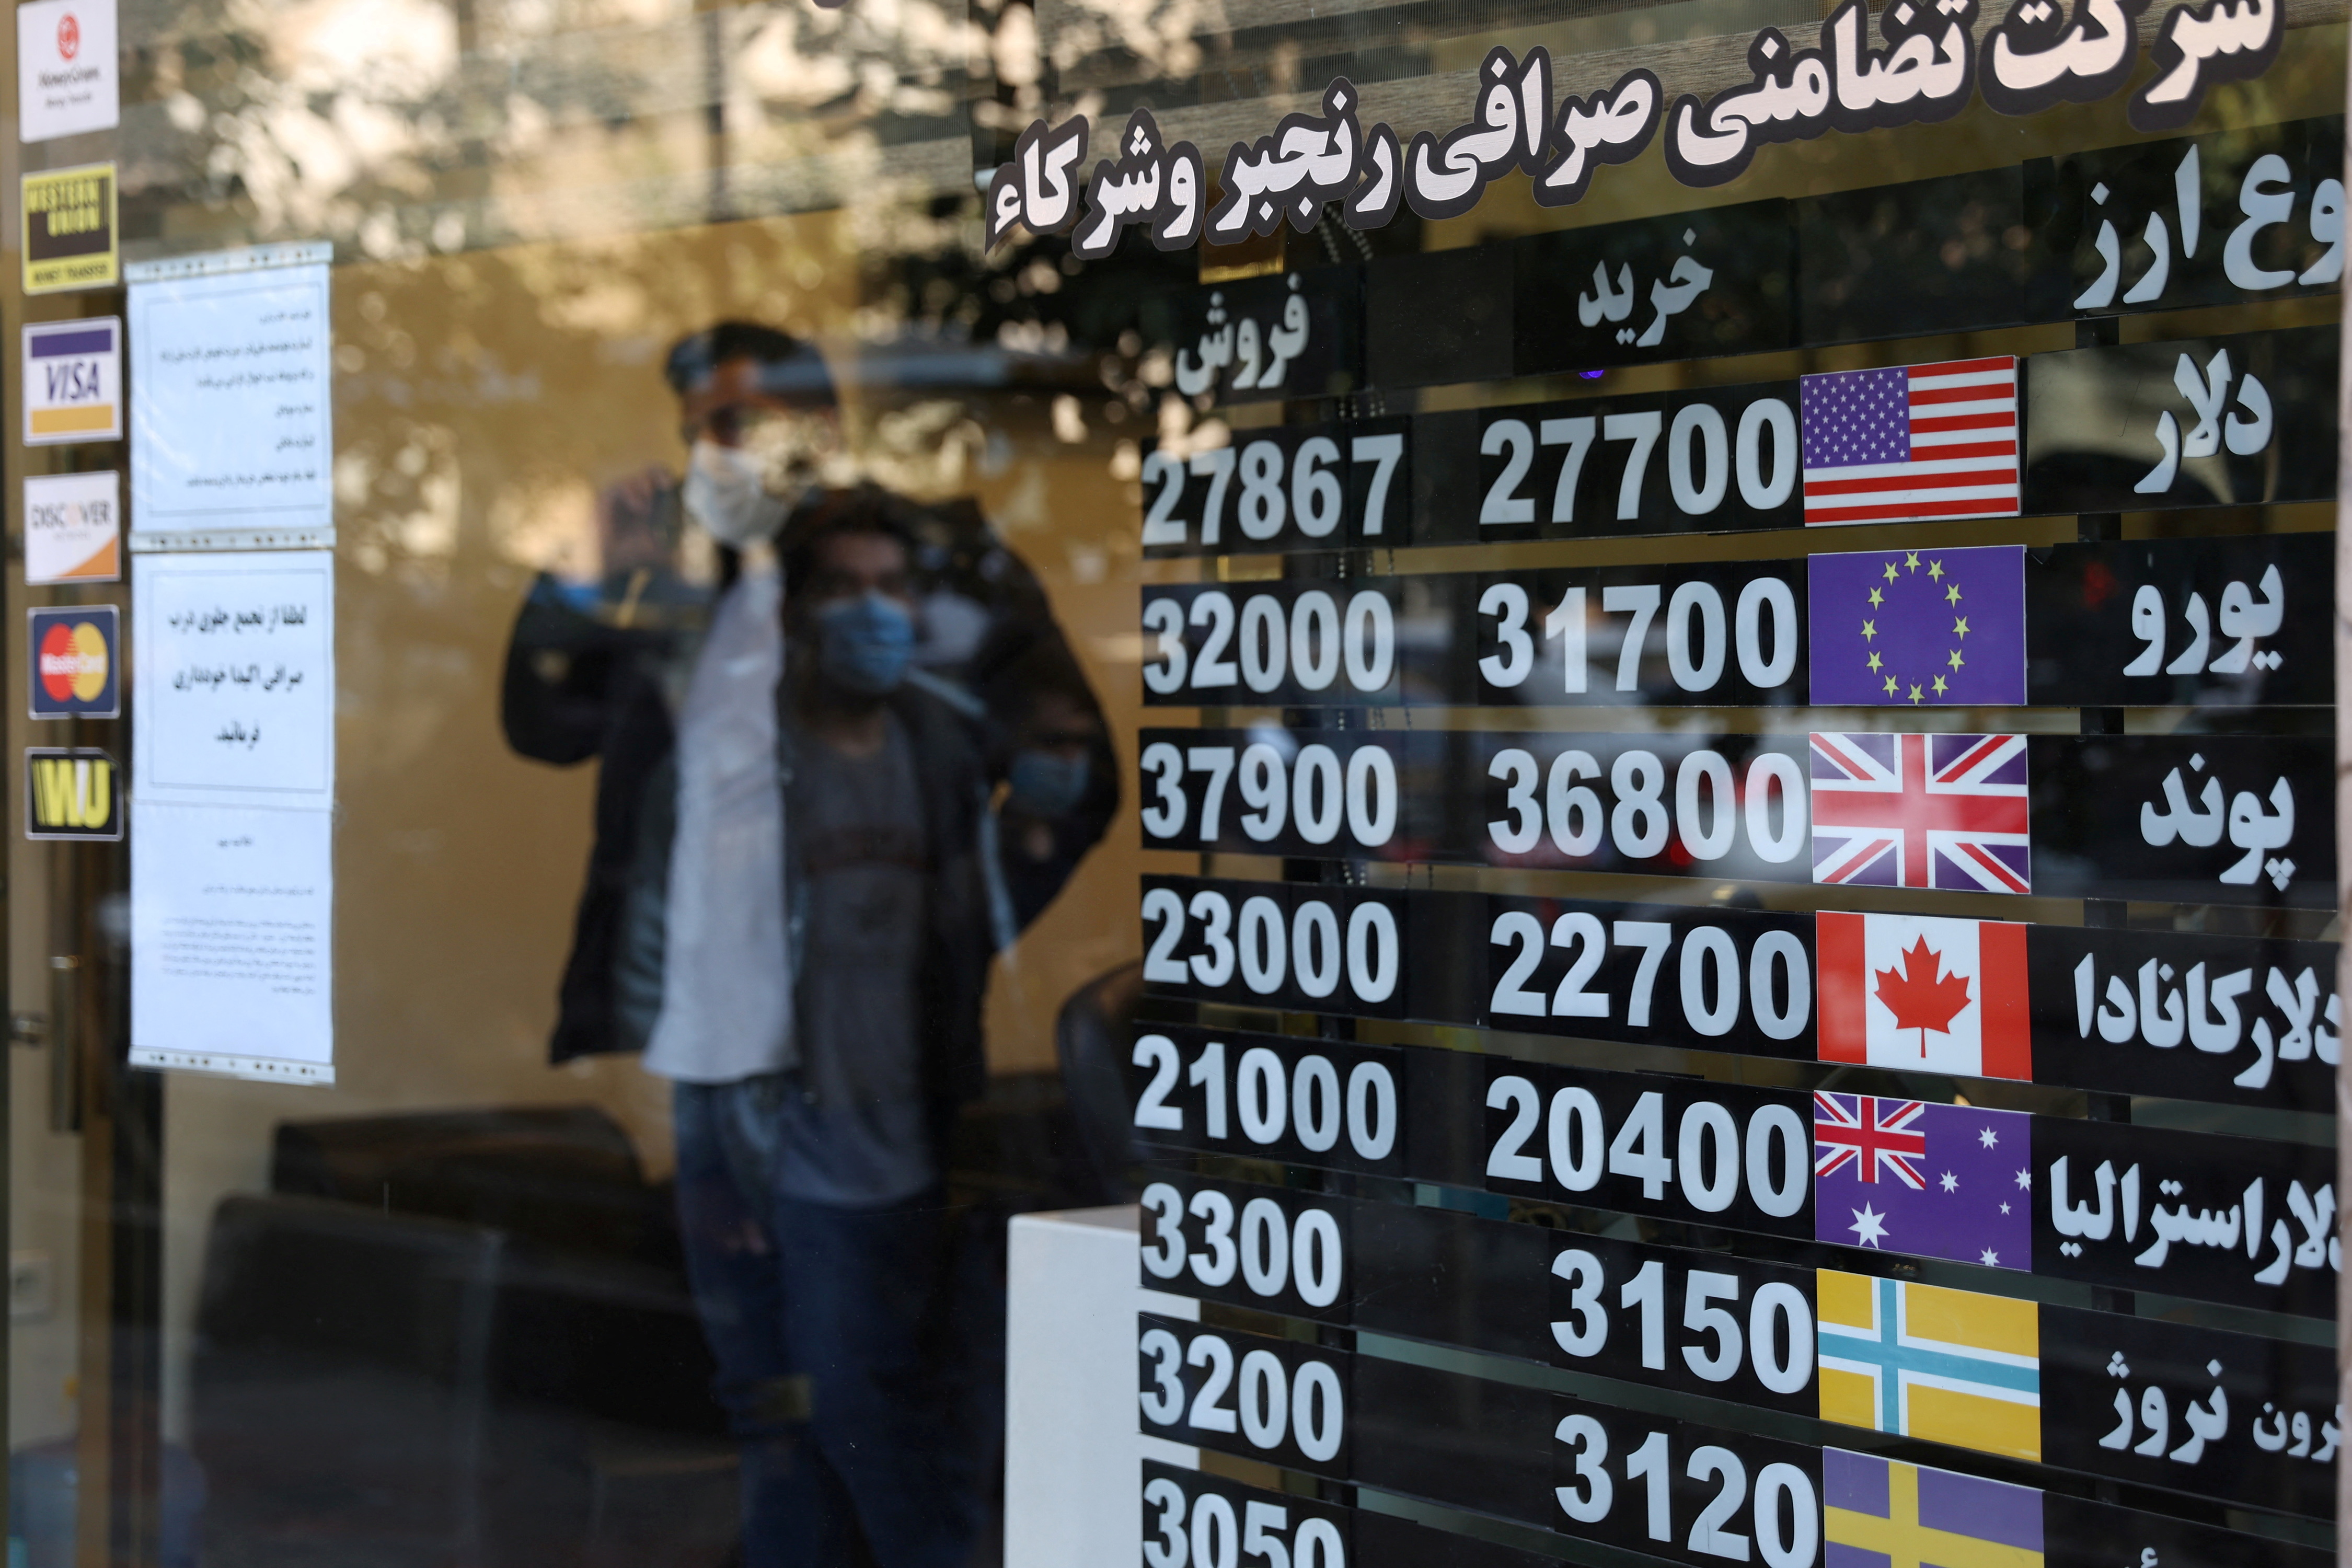 Una casa de cambio en Teherán. La exlusión del sistema SWIFT golpeó duramente a la economía persa (Majid Asgaripour/WANA)